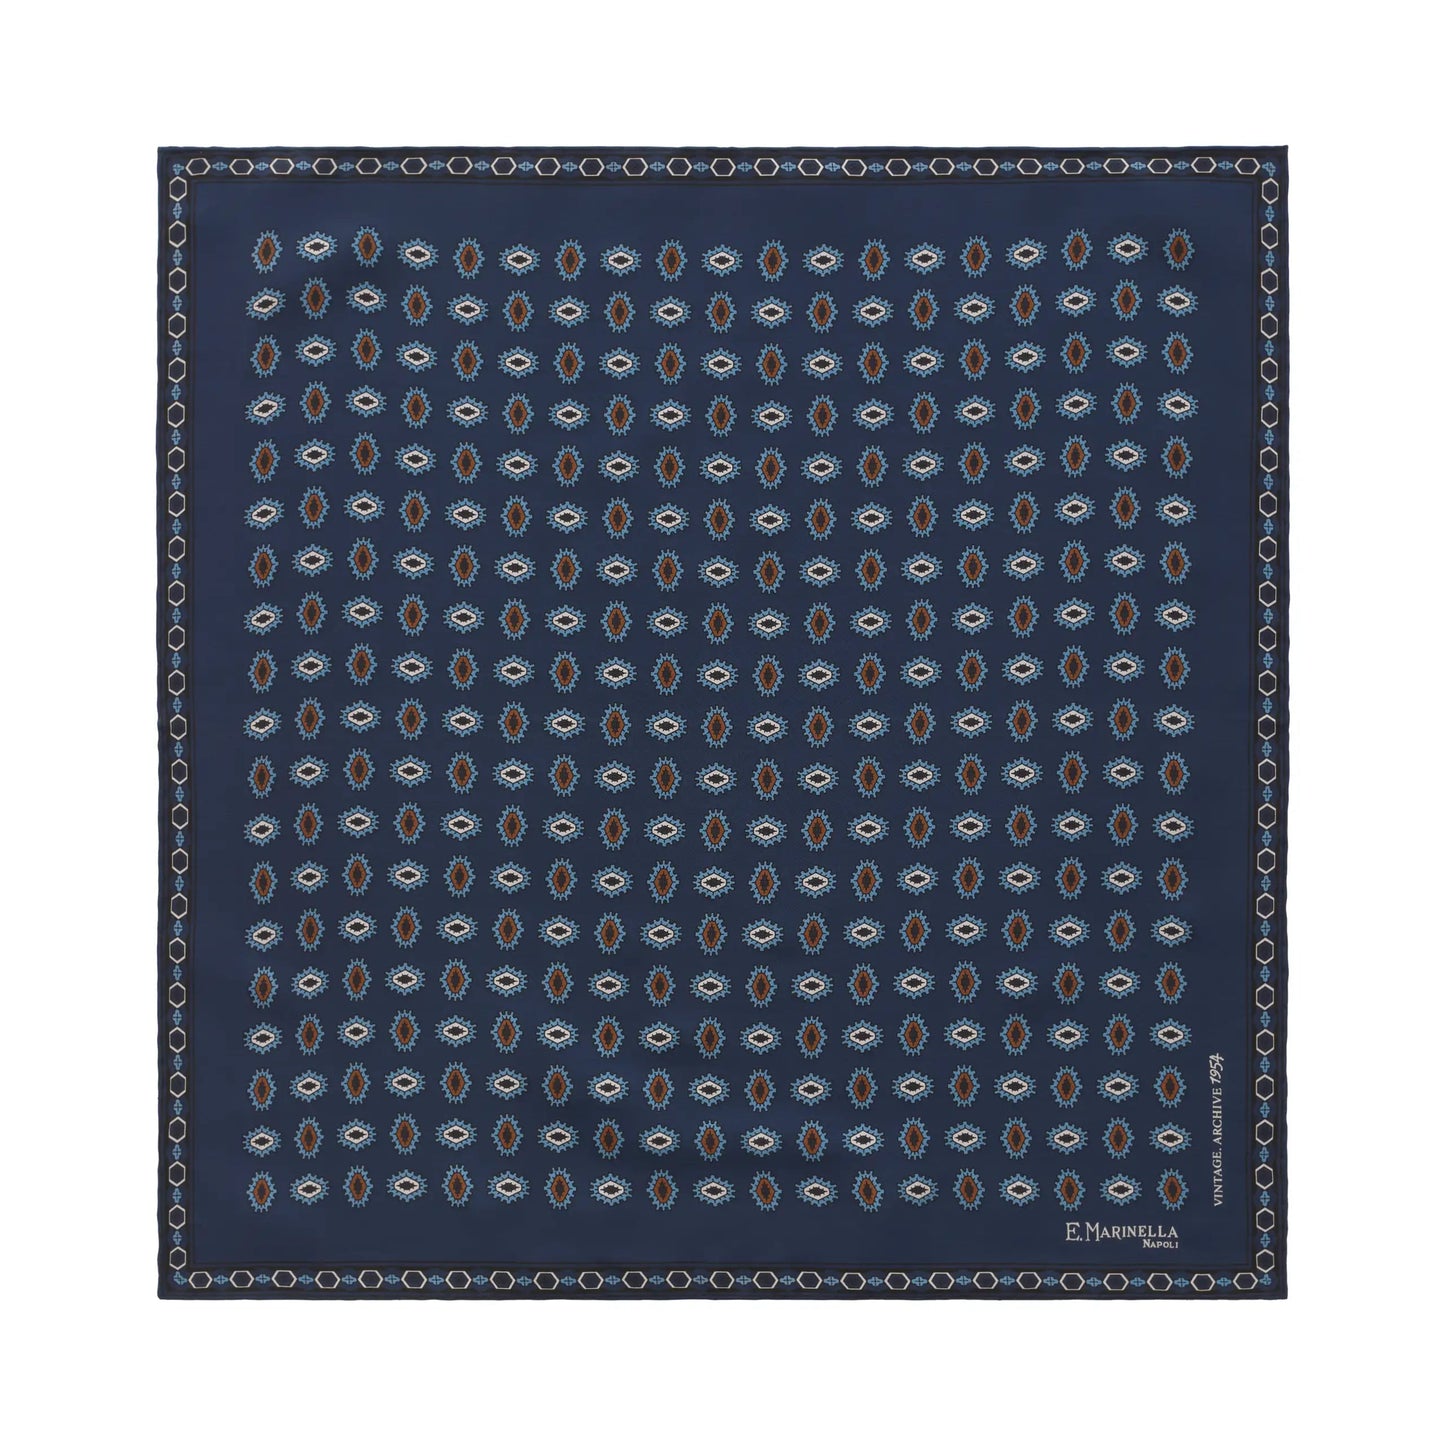 E.Marinella Printed Silk Pocket Square in Blue - SARTALE